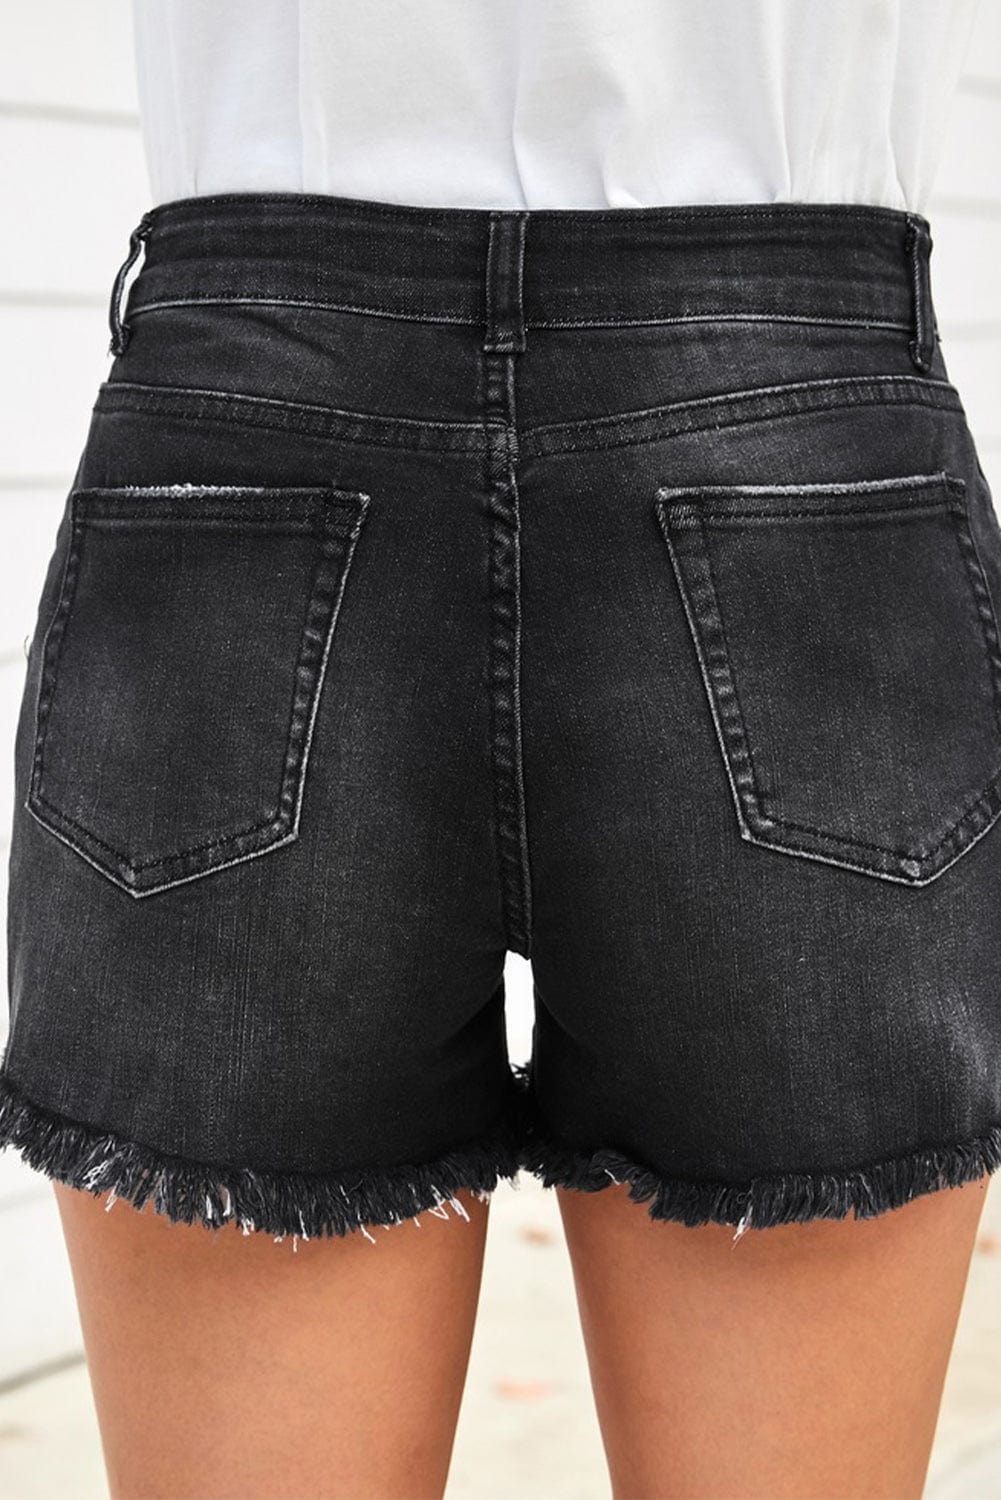 Raw Hem Distressed Denim Shorts with Pockets - Body By J'ne